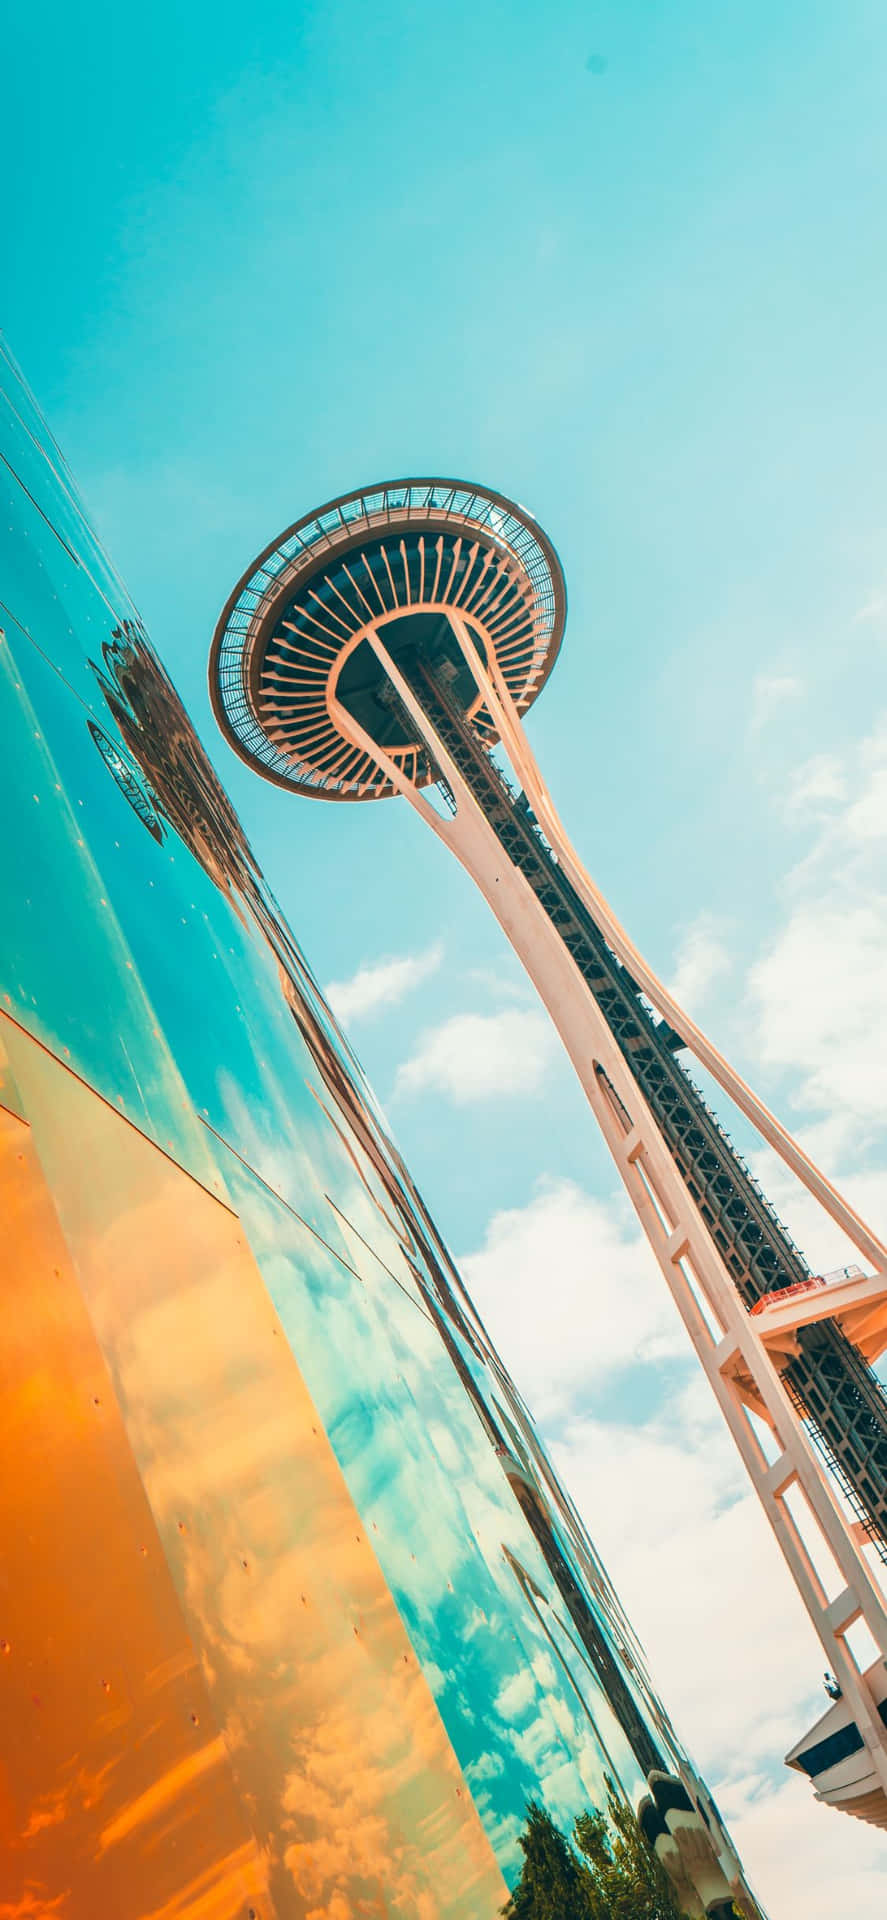 Nyd smuk udsigt fra Iphone X i Seattle.